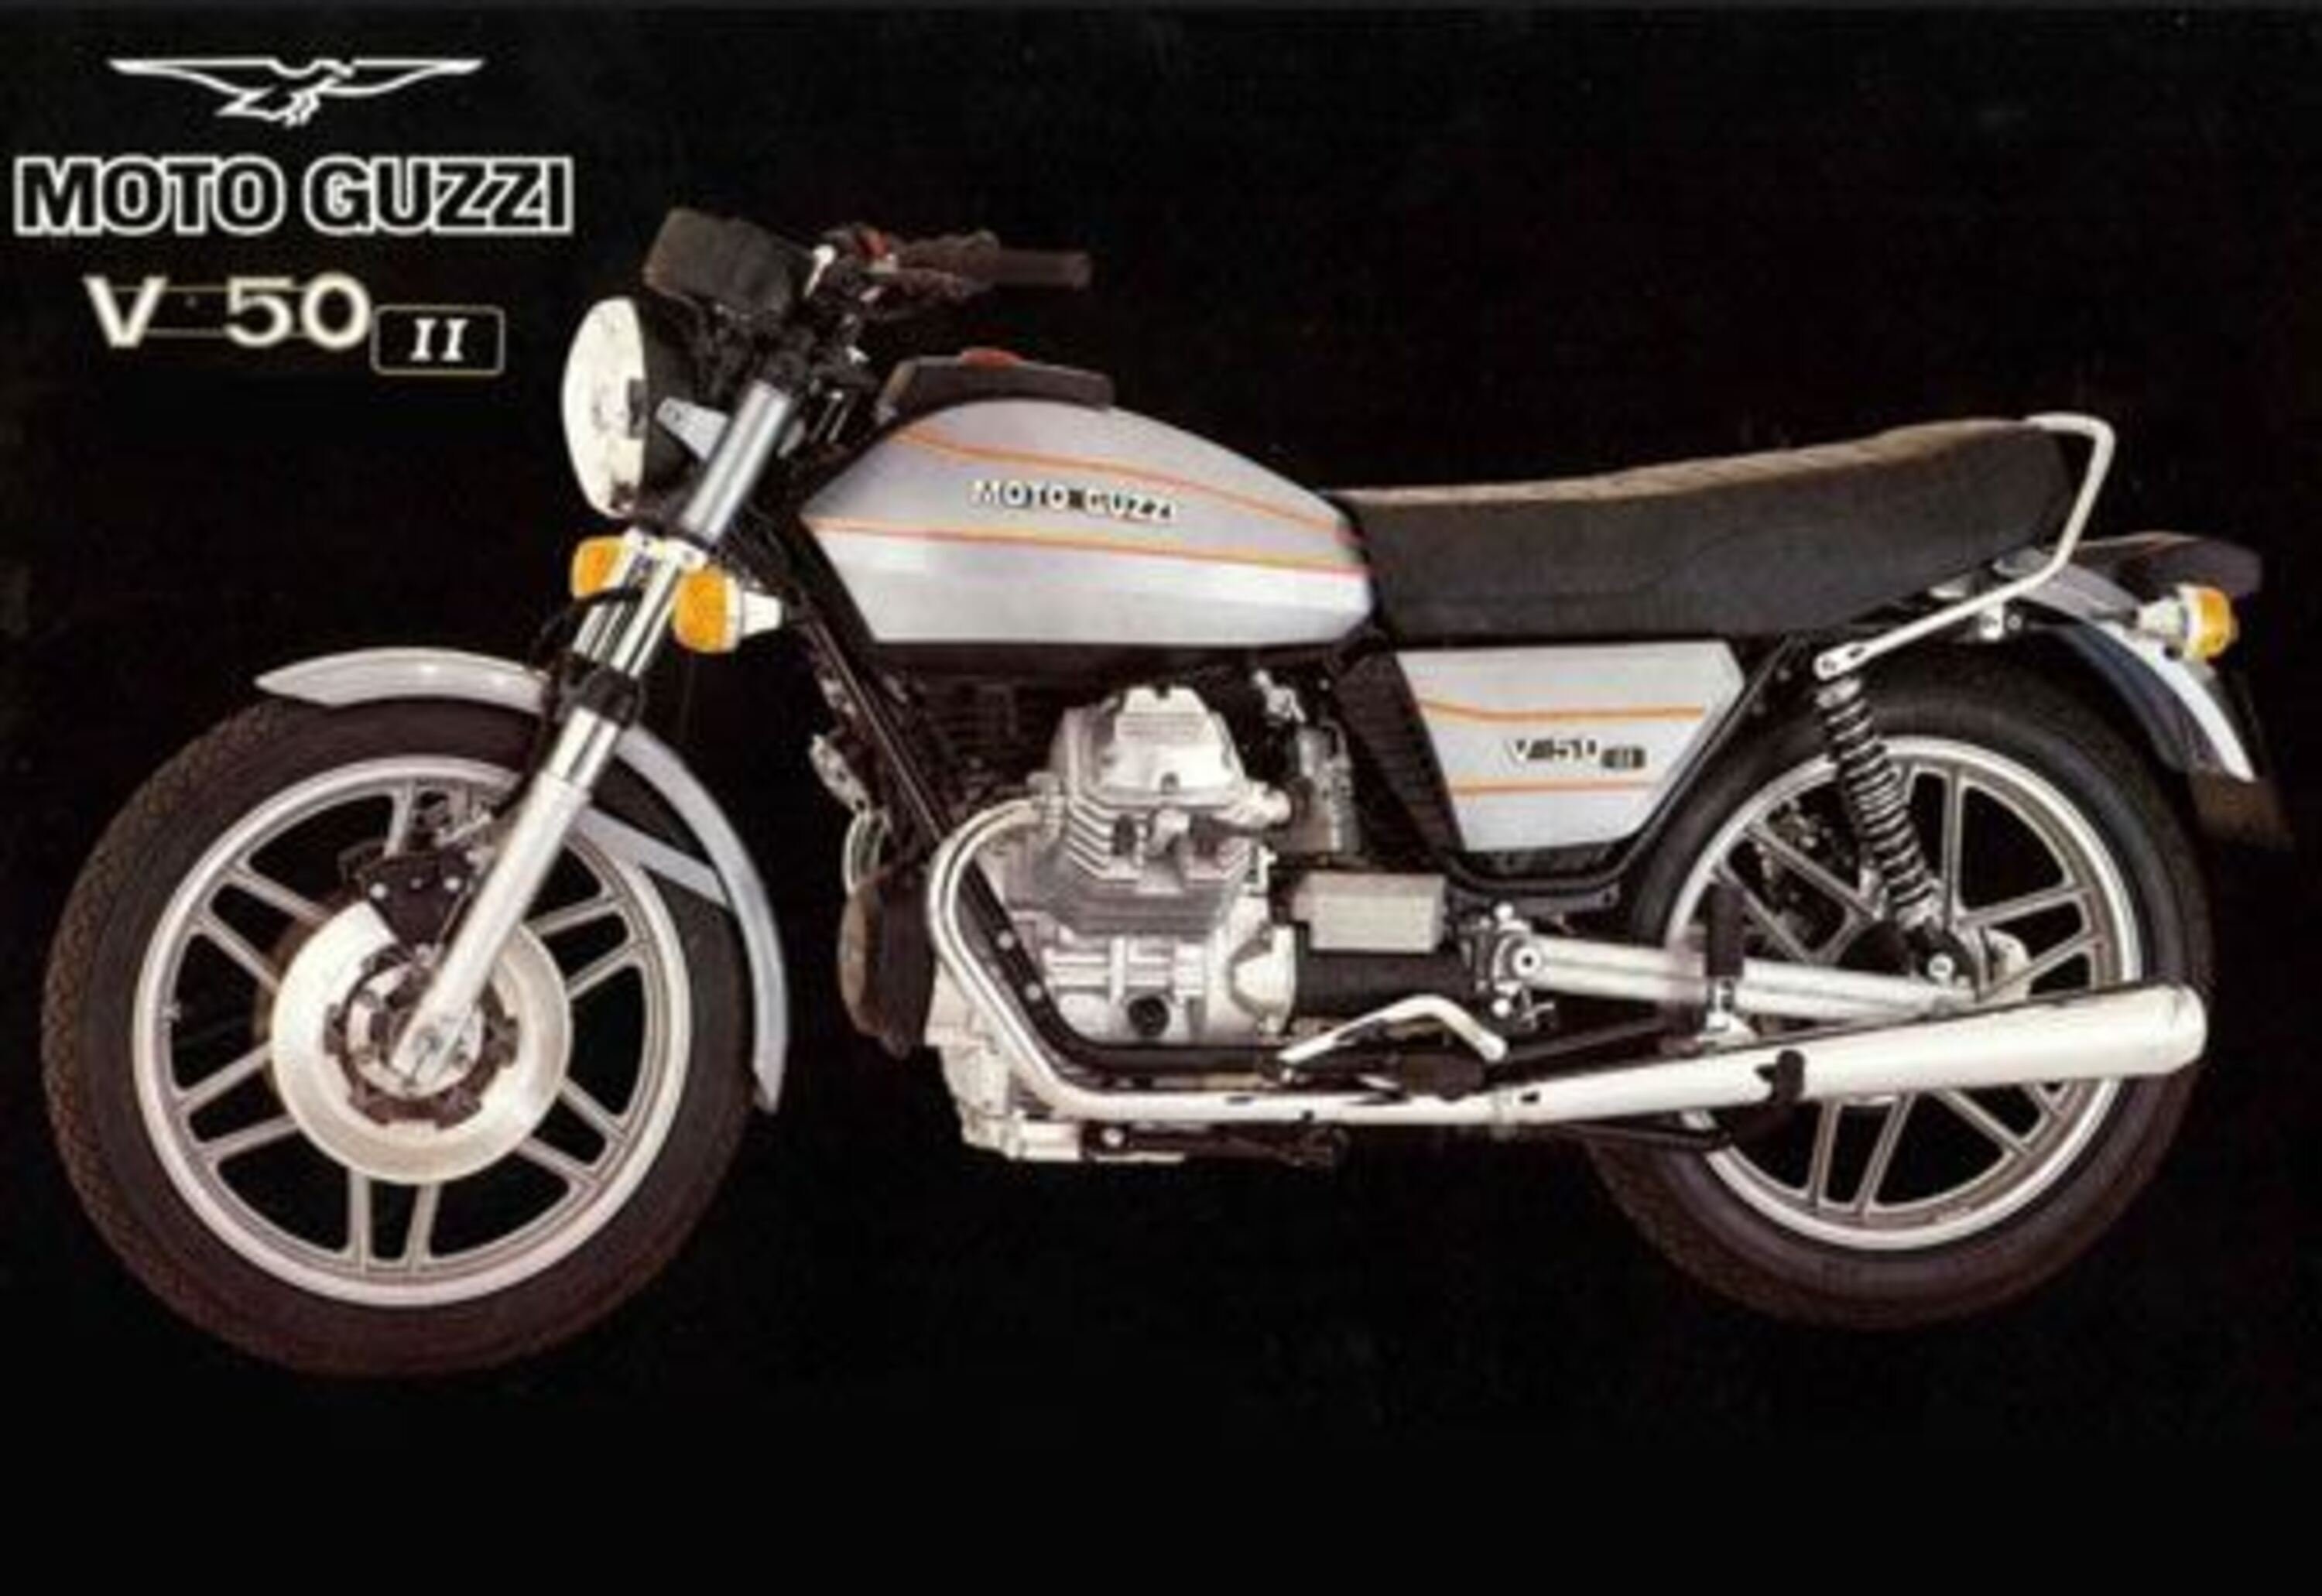 Moto Guzzi V 50 V 50 II (1980 - 85)